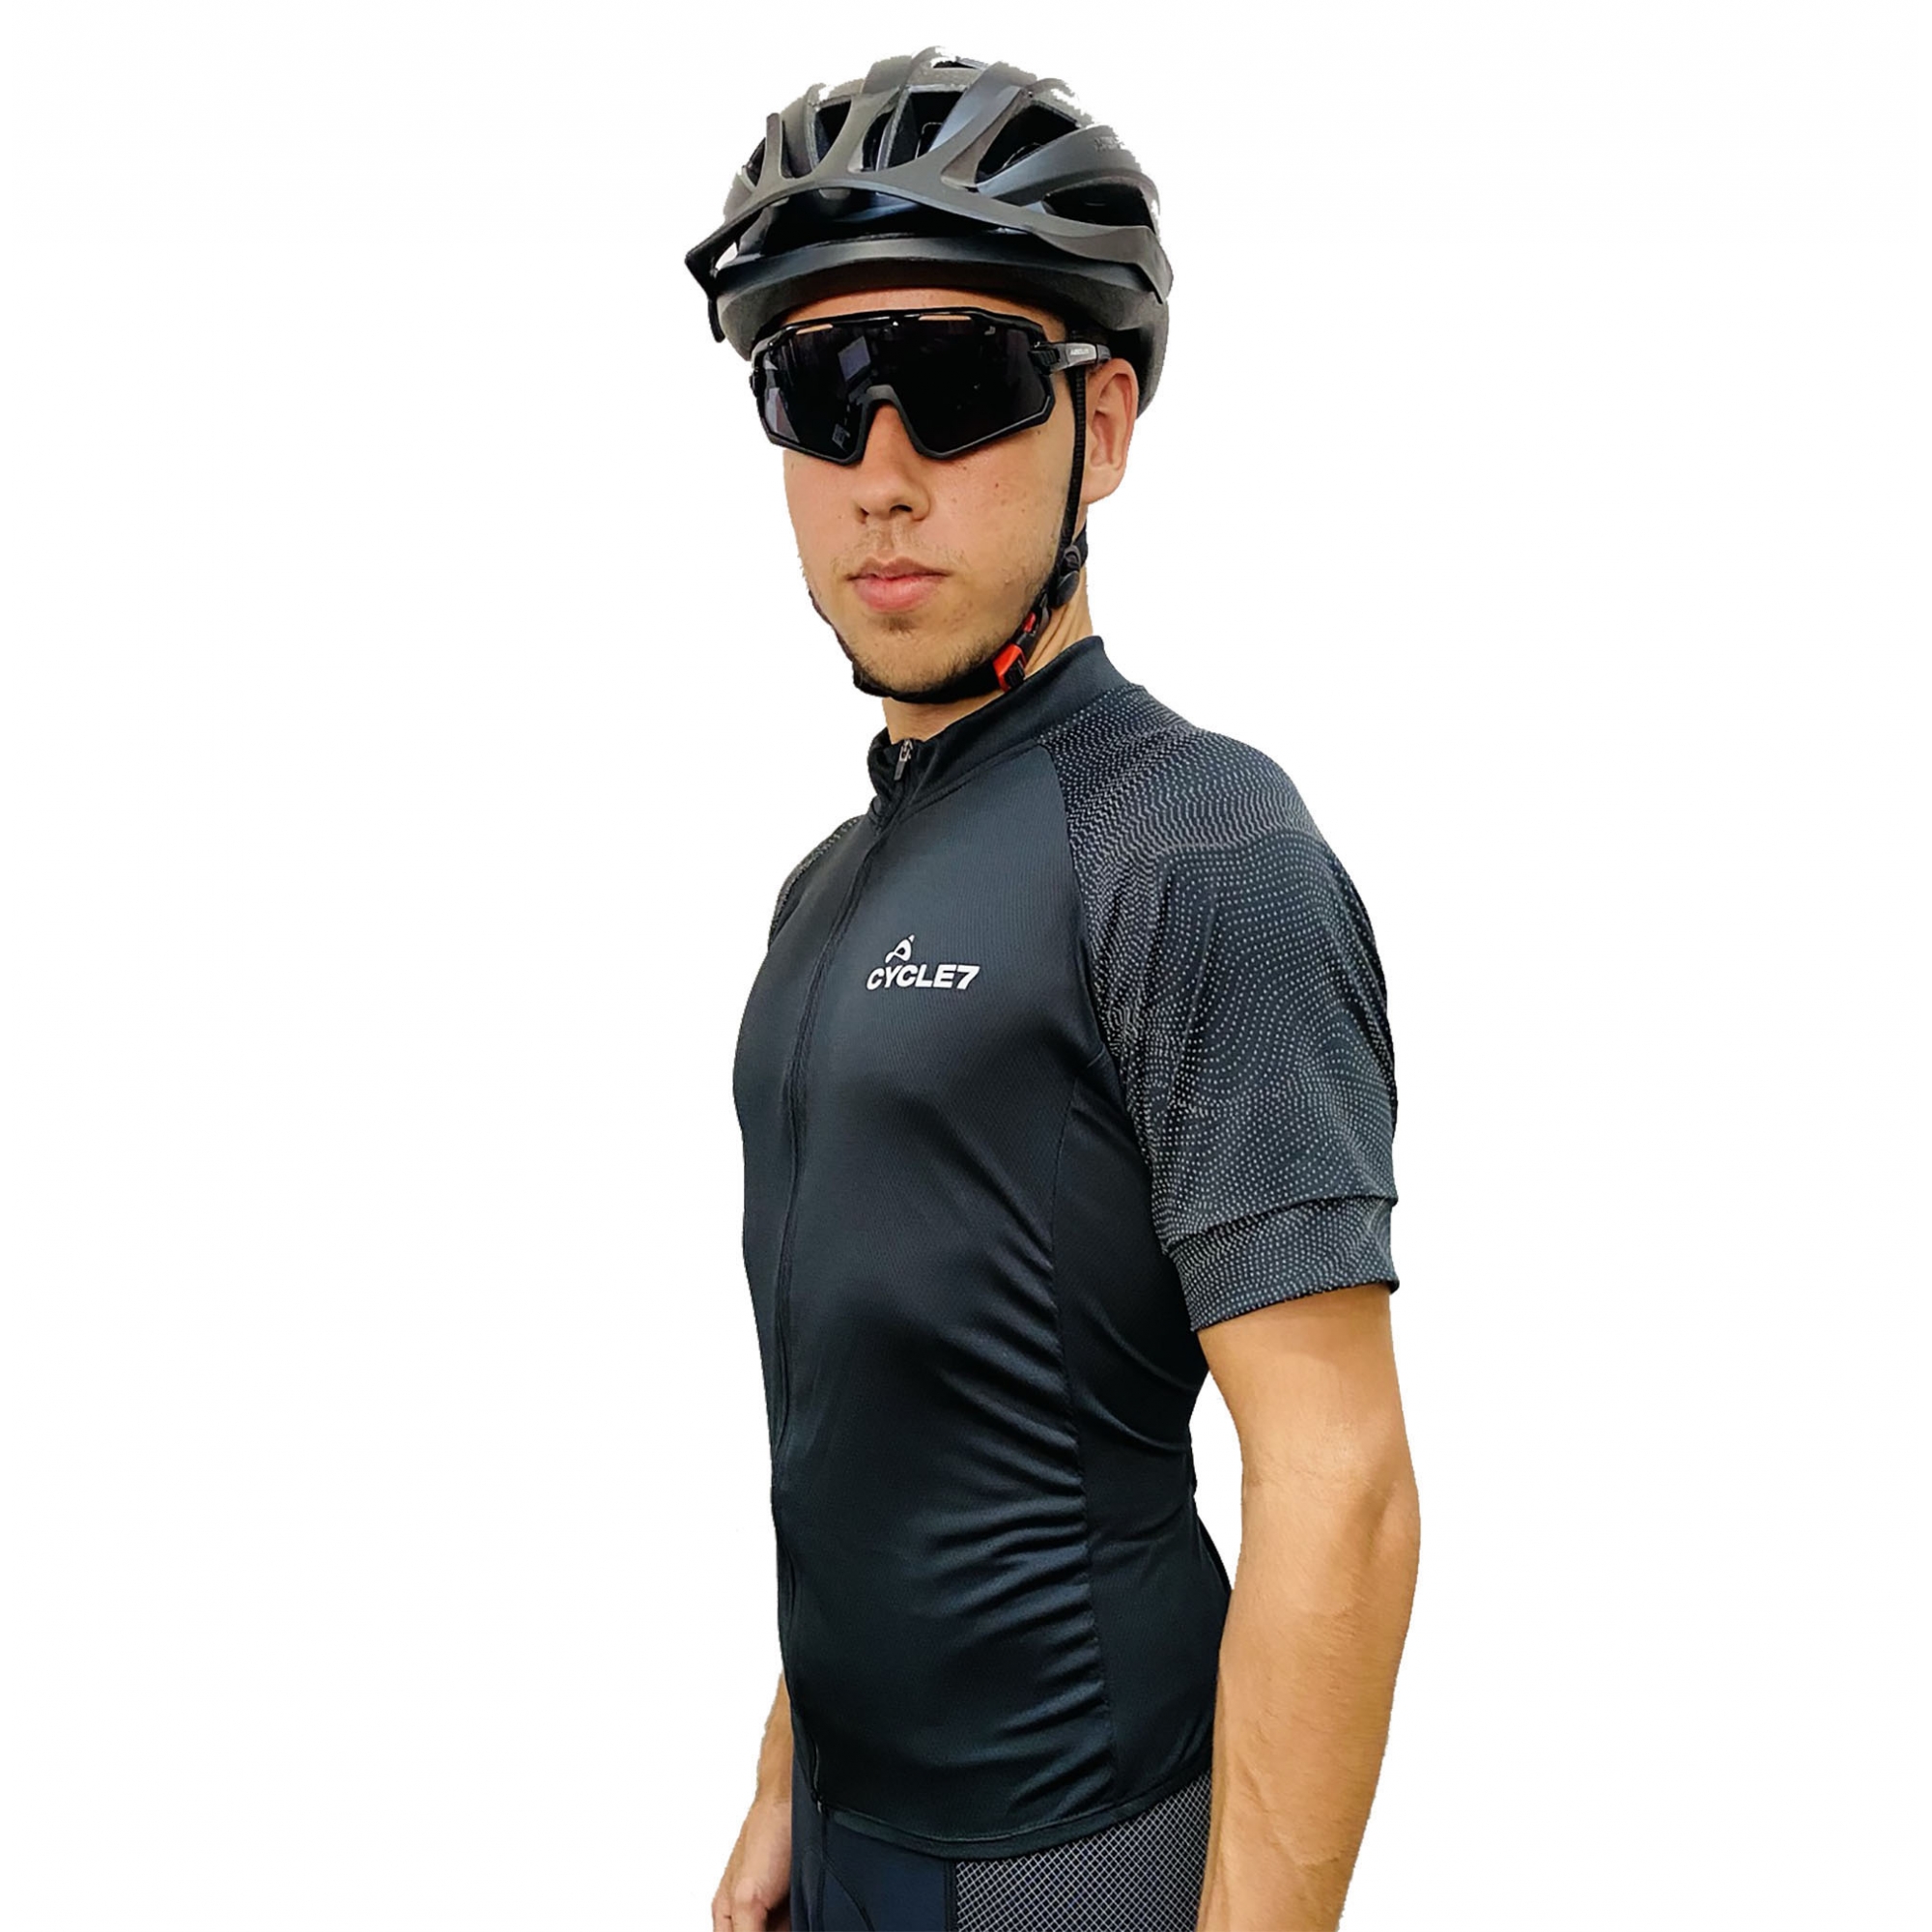 Camisa Ciclismo Com Mangas Refletivas - Cycle 7